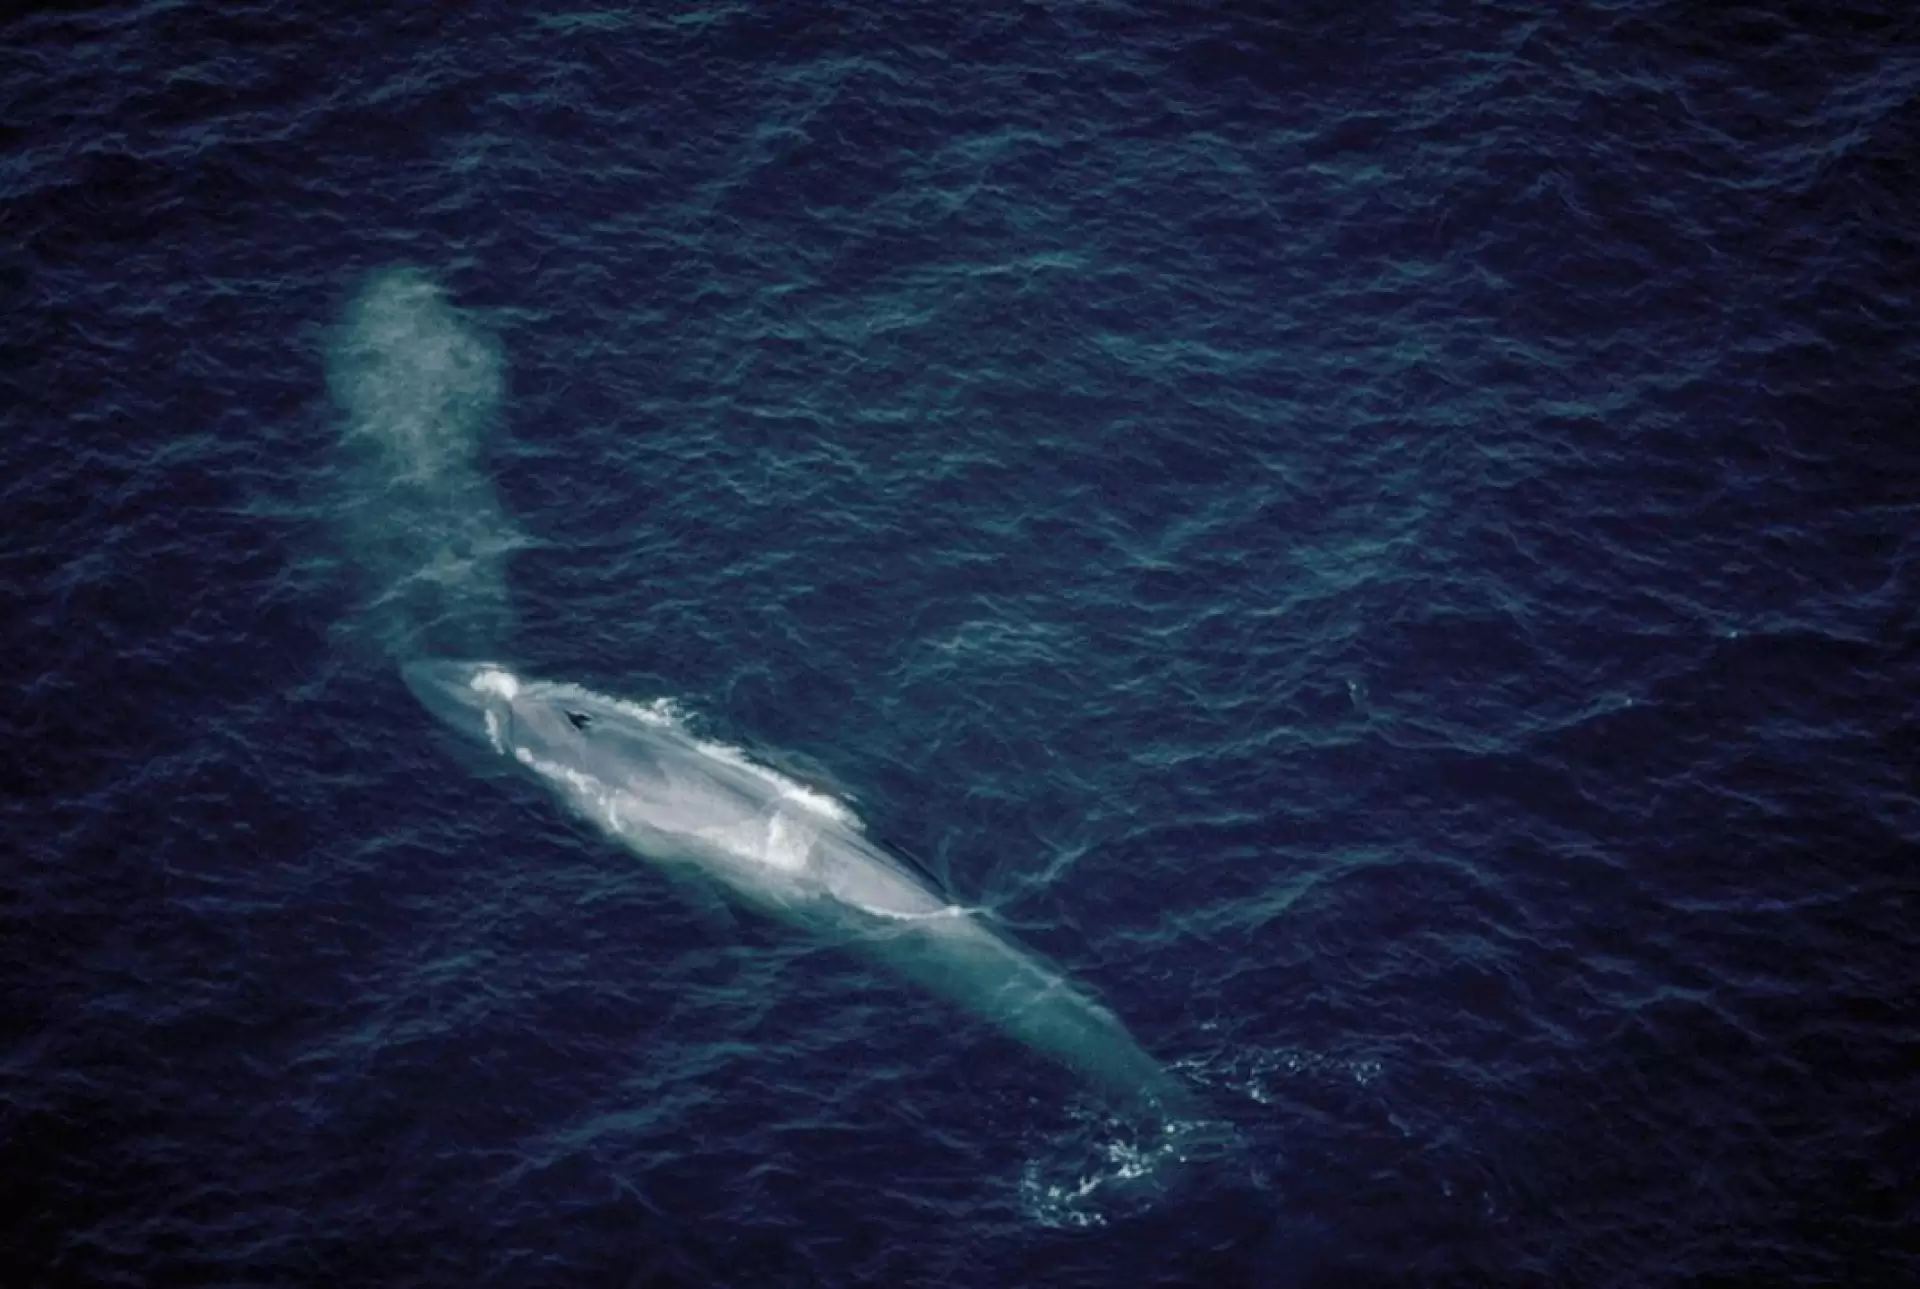 دانلود مستند The Loneliest Whale: The Search for 52 2021 با تماشای آنلاین